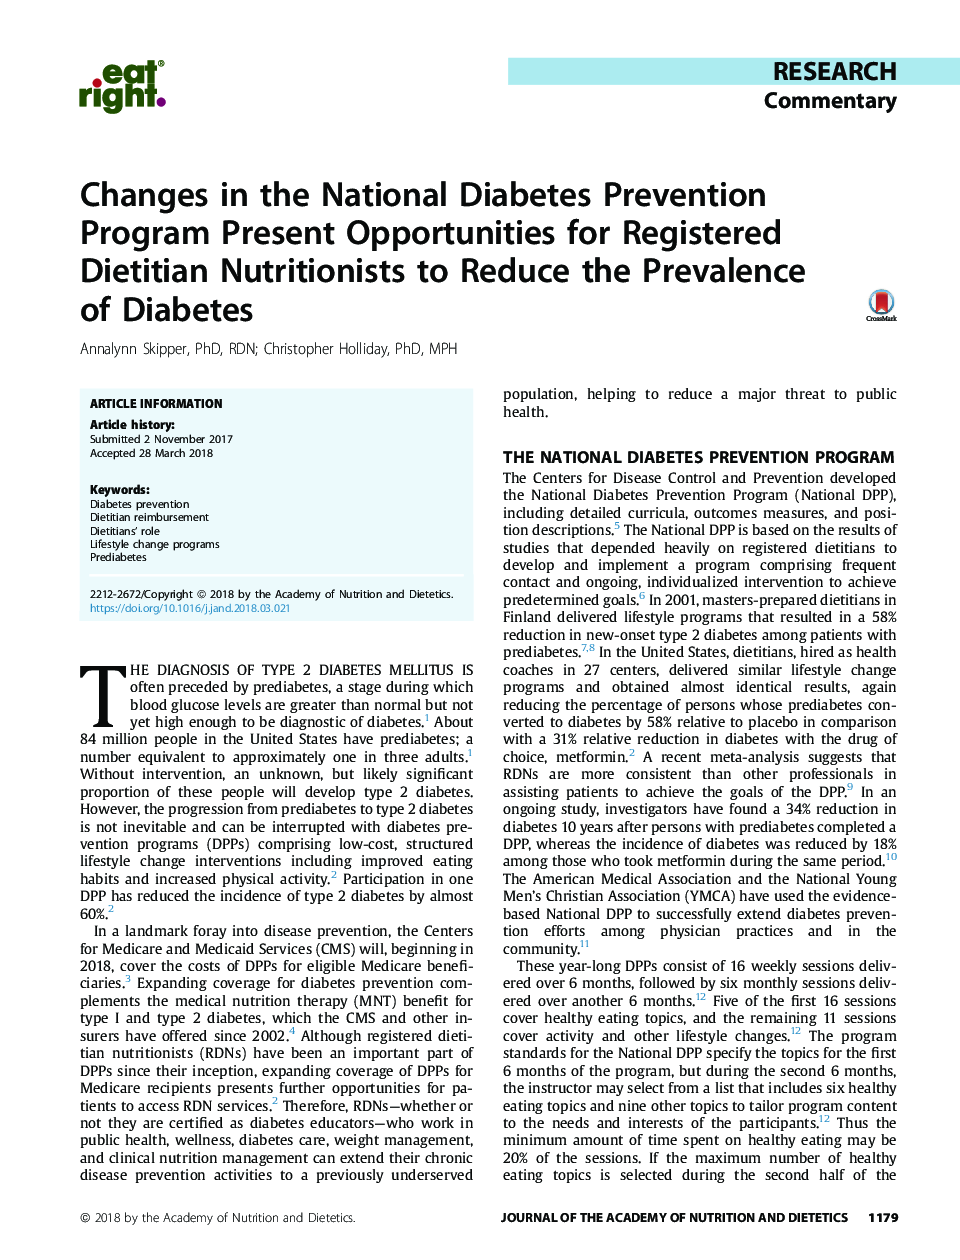 تغییرات در برنامه ملی جلوگیری از دیابت فرصت‌هایی برای کاهش شیوع دیابت برای متخصصان علم تغذیه فراهم می‌کند